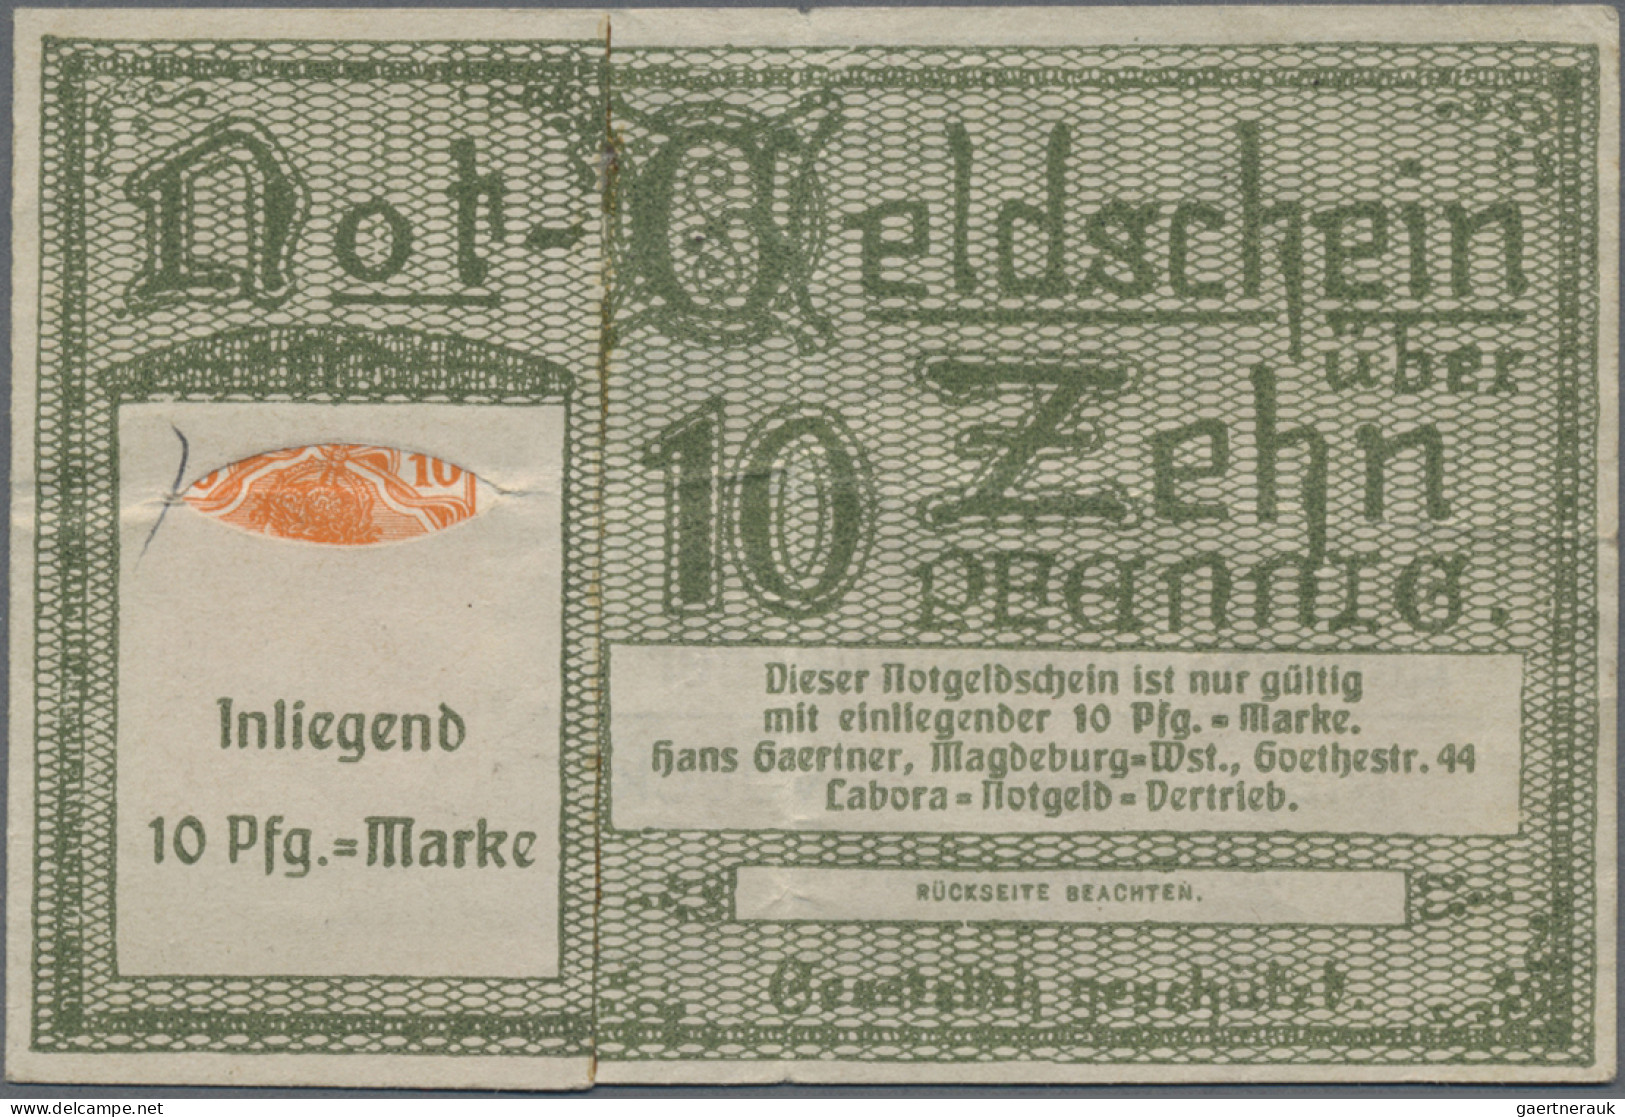 Deutschland - Notgeld: Altes Notgeldalbum prall gefüllt mit über 1500 deutschen